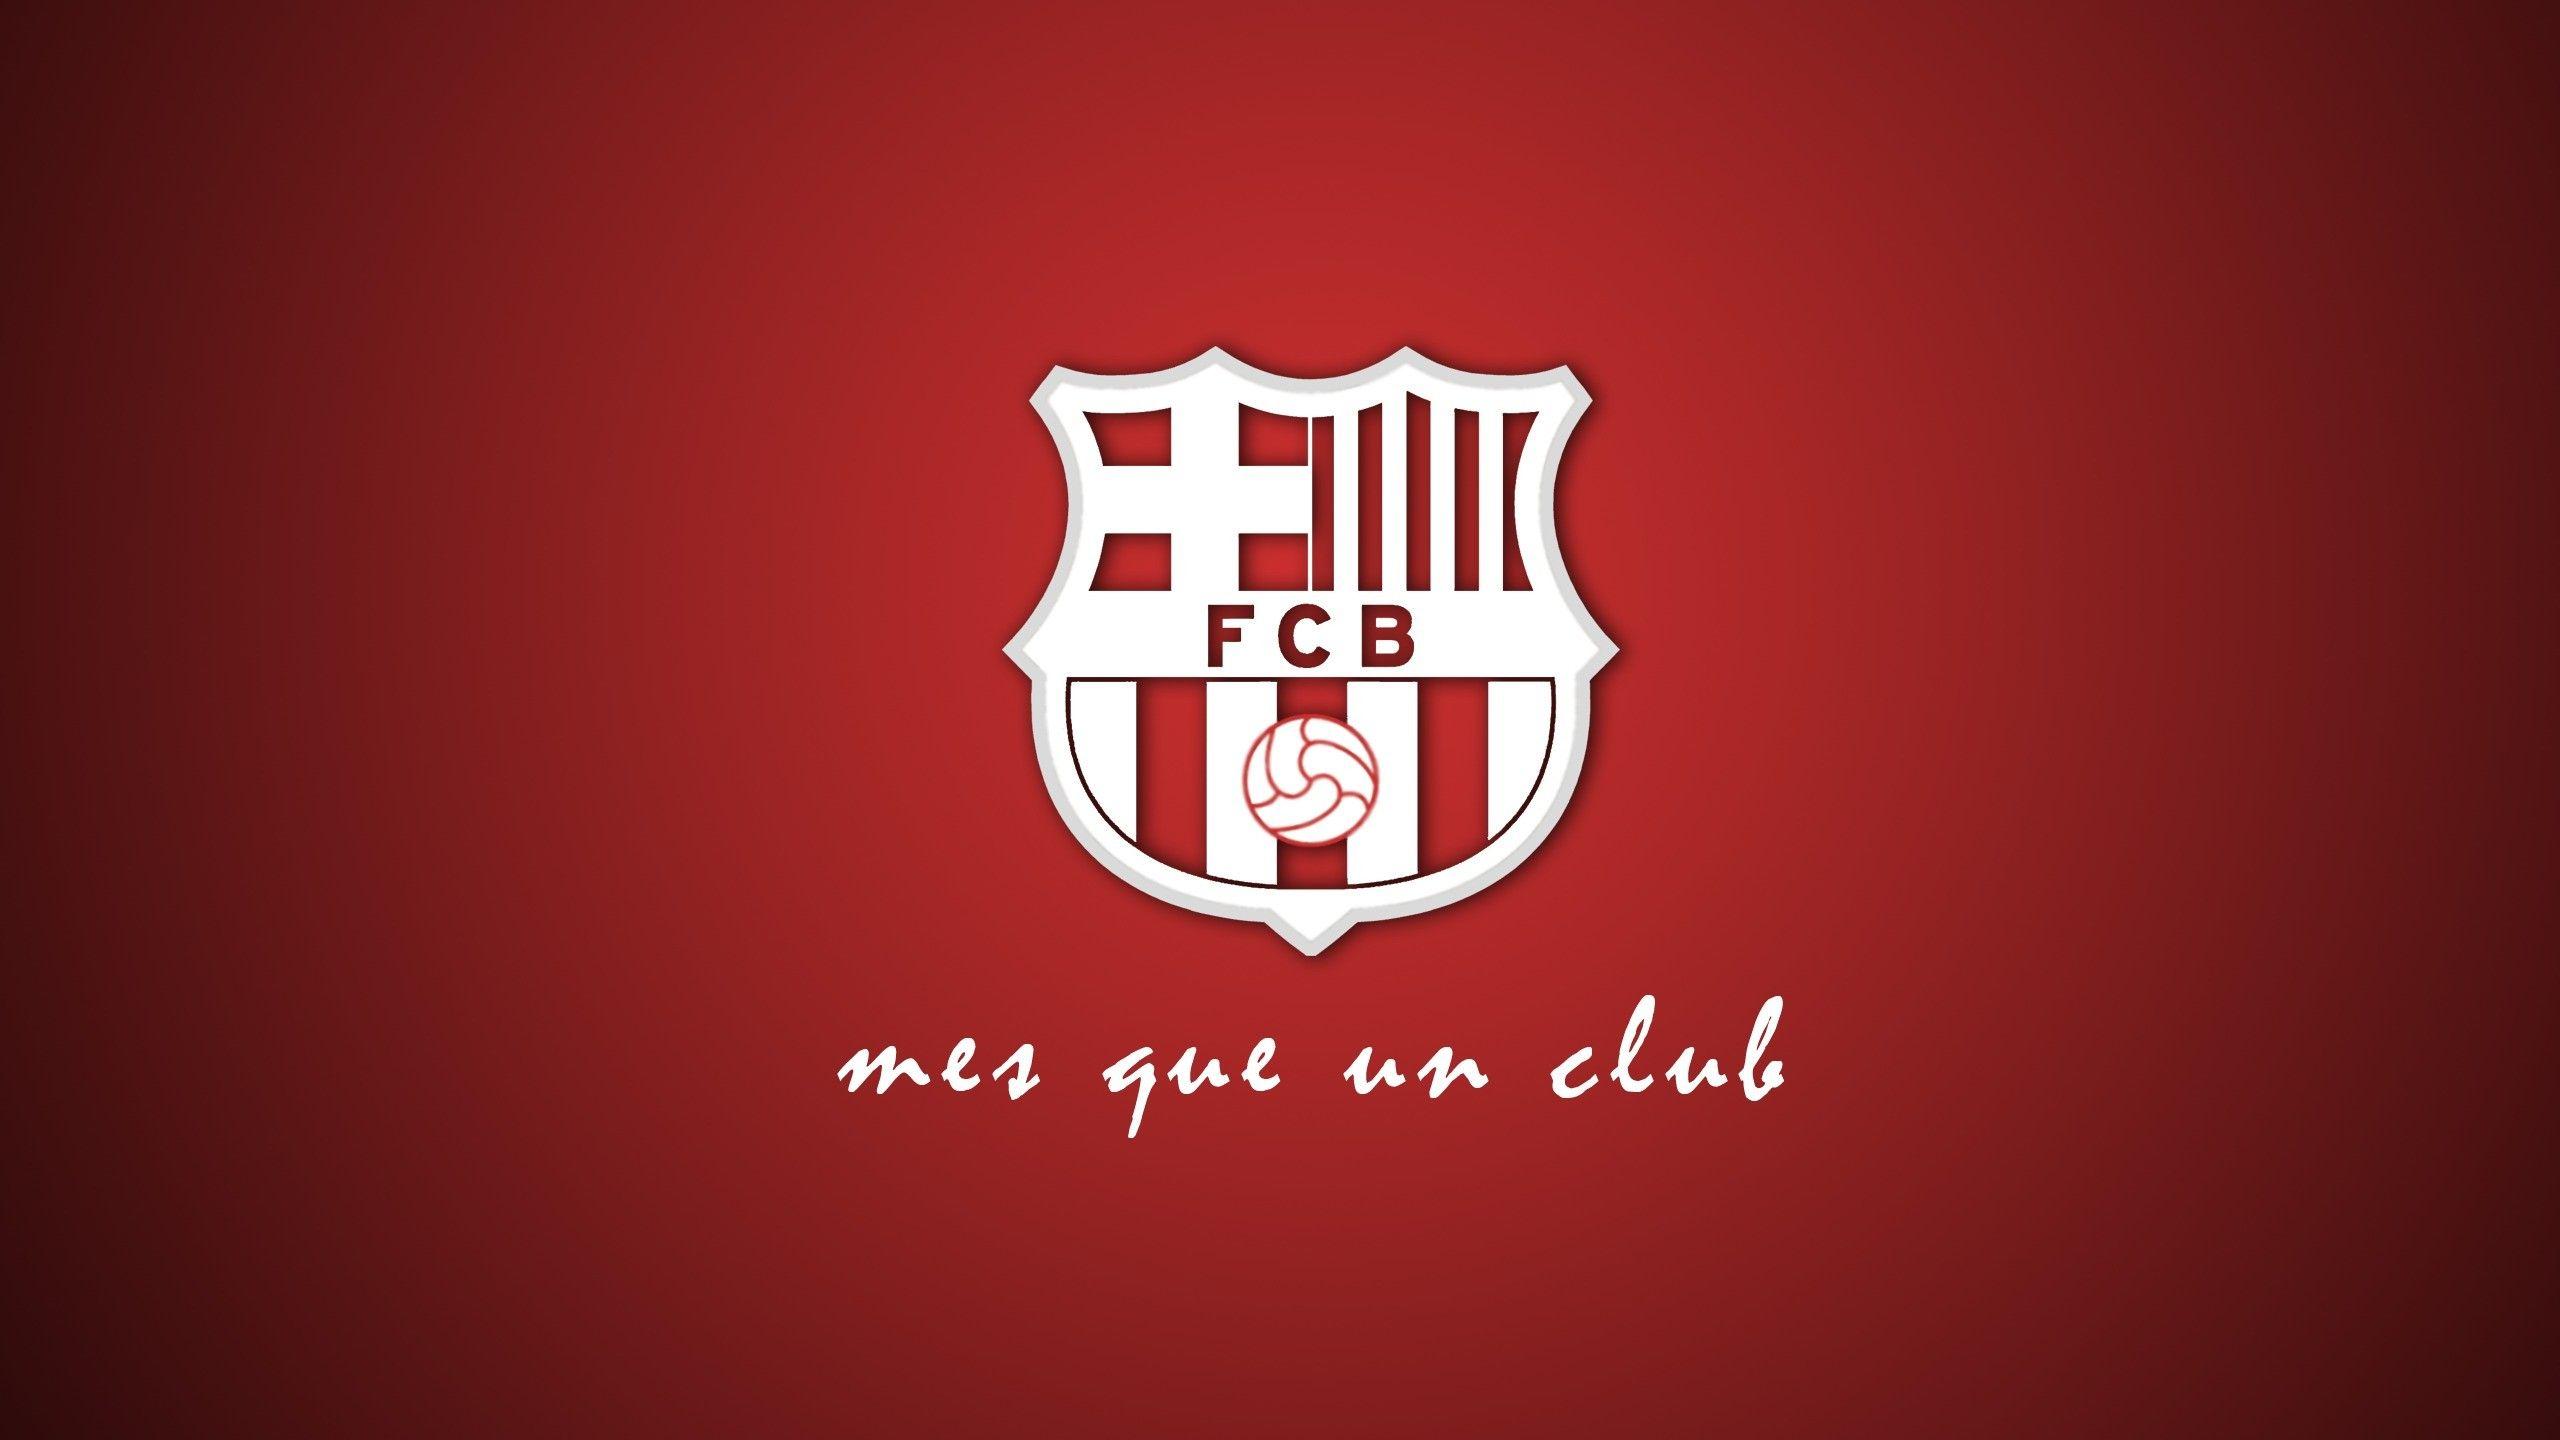 Wallpaper FC Barcelona, Football club, HD, Sports